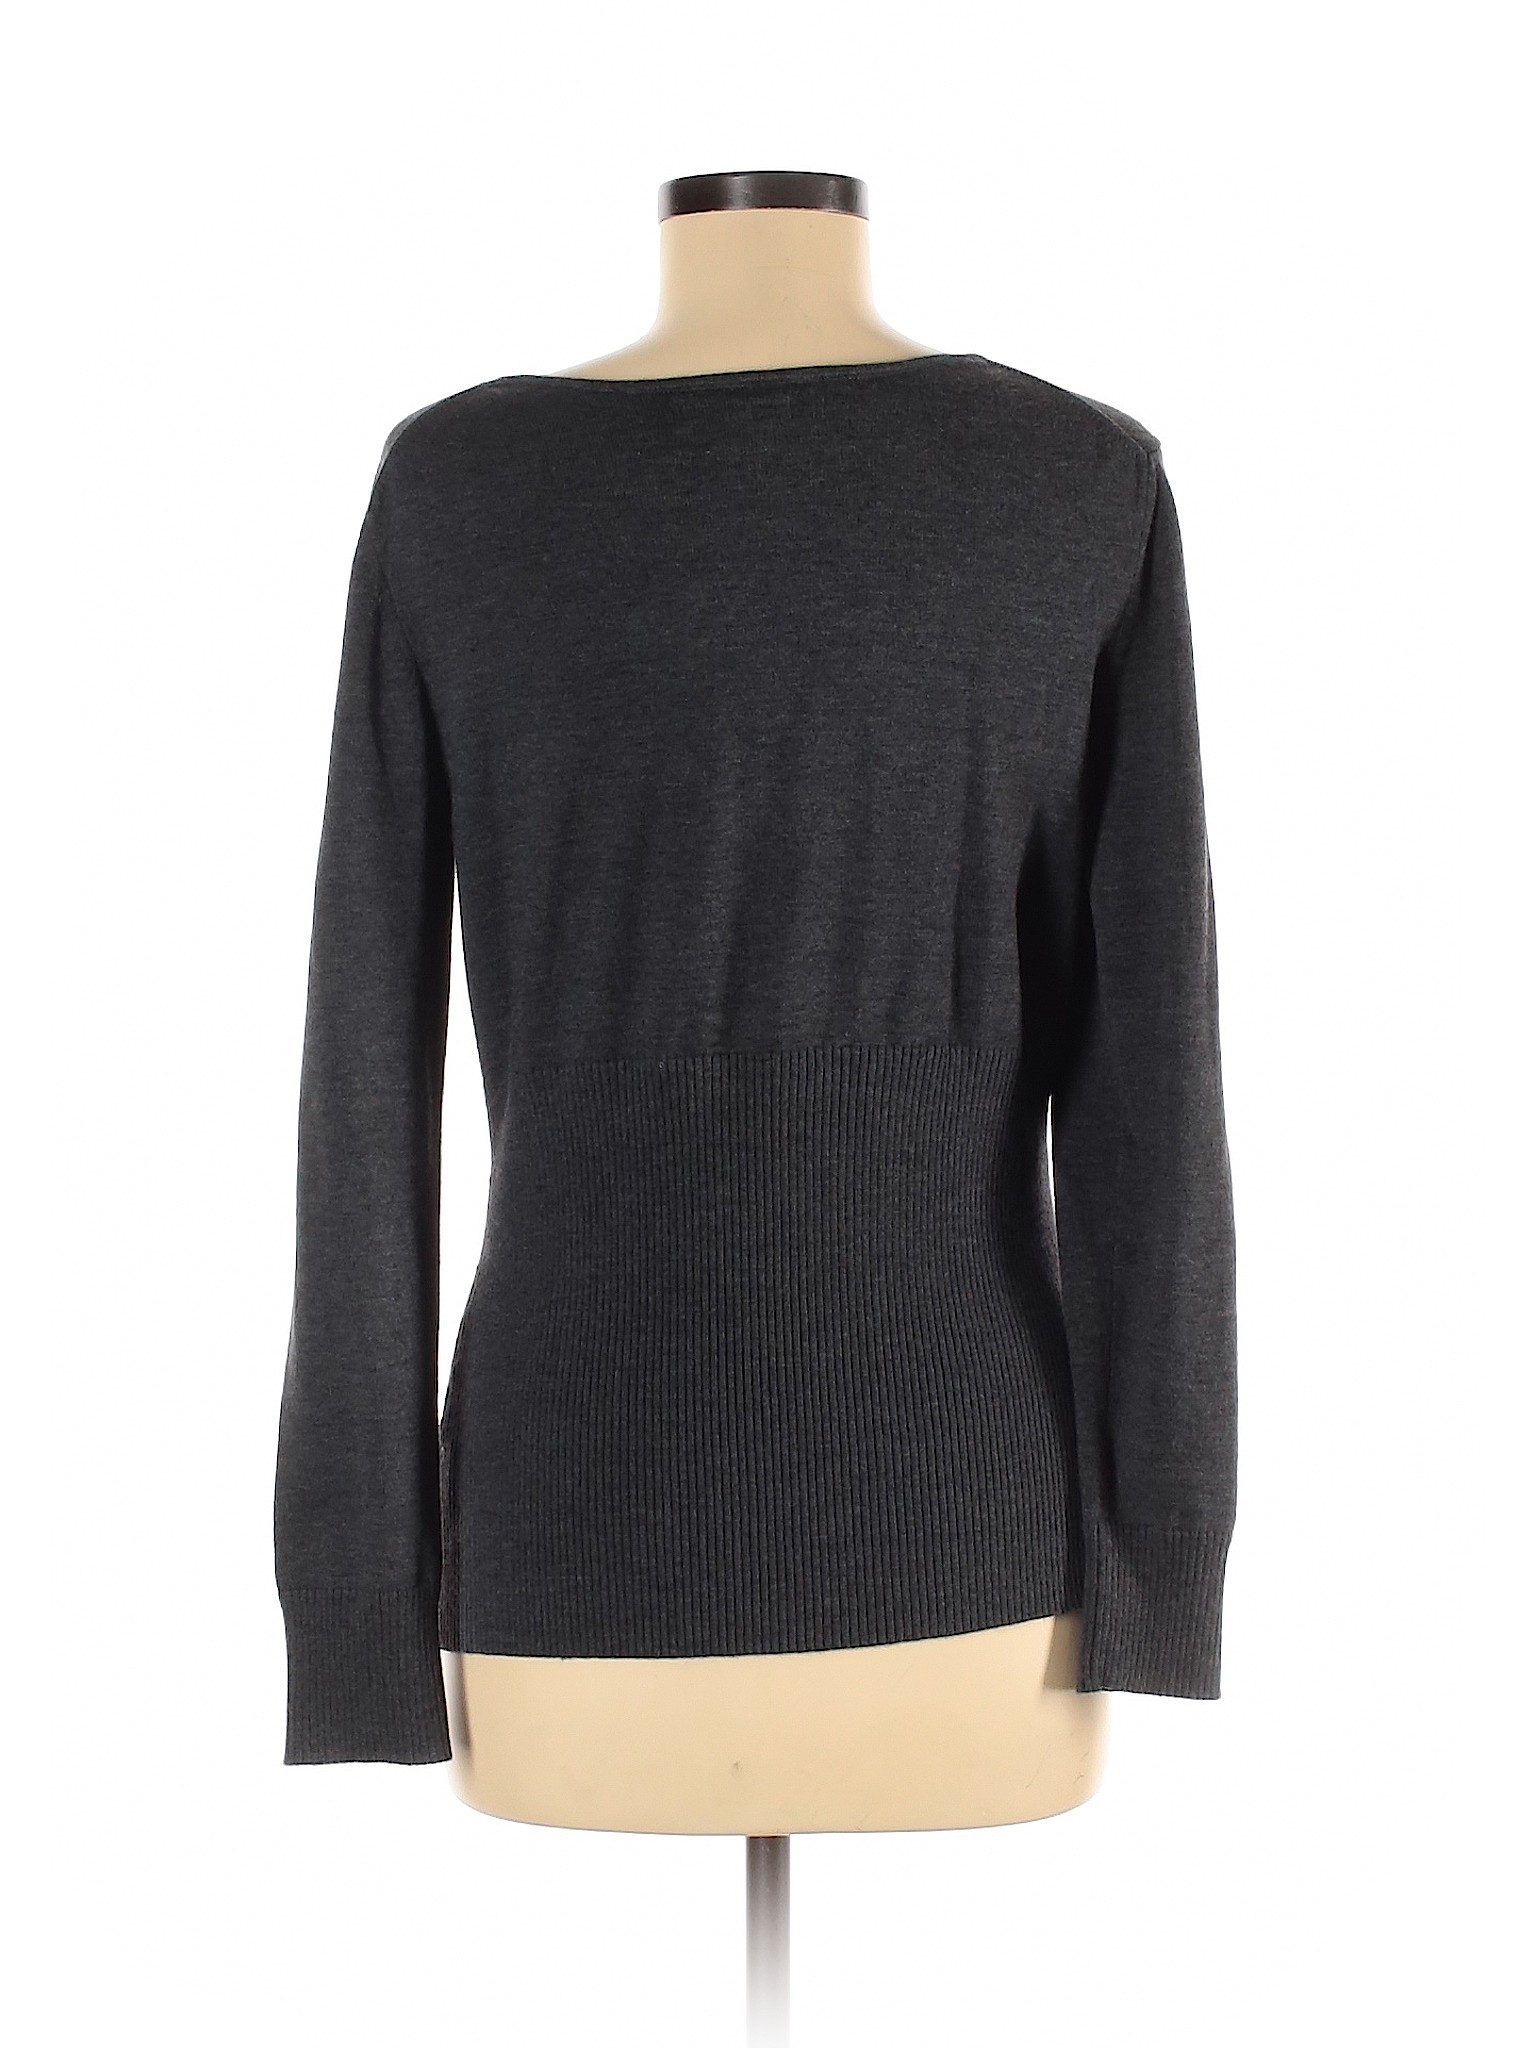 Van Heusen Women Gray Pullover Sweater M | eBay